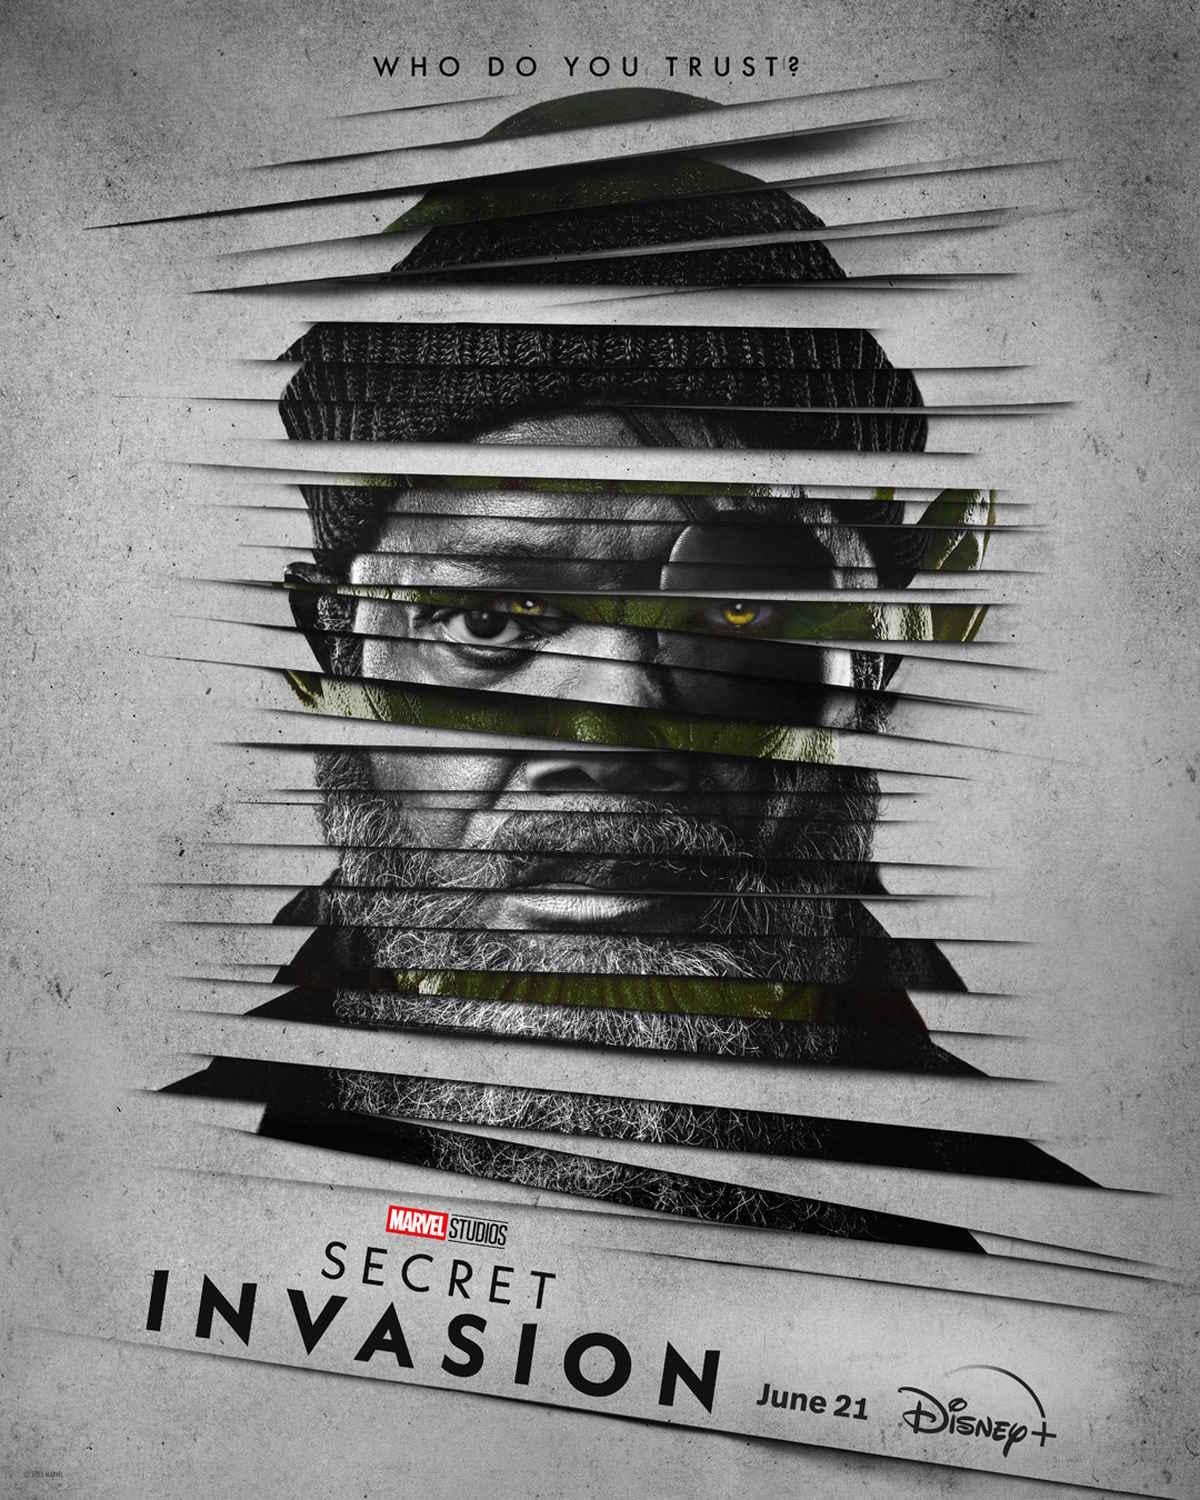 secret-invasion-marvel-series-disney-poster.jpg